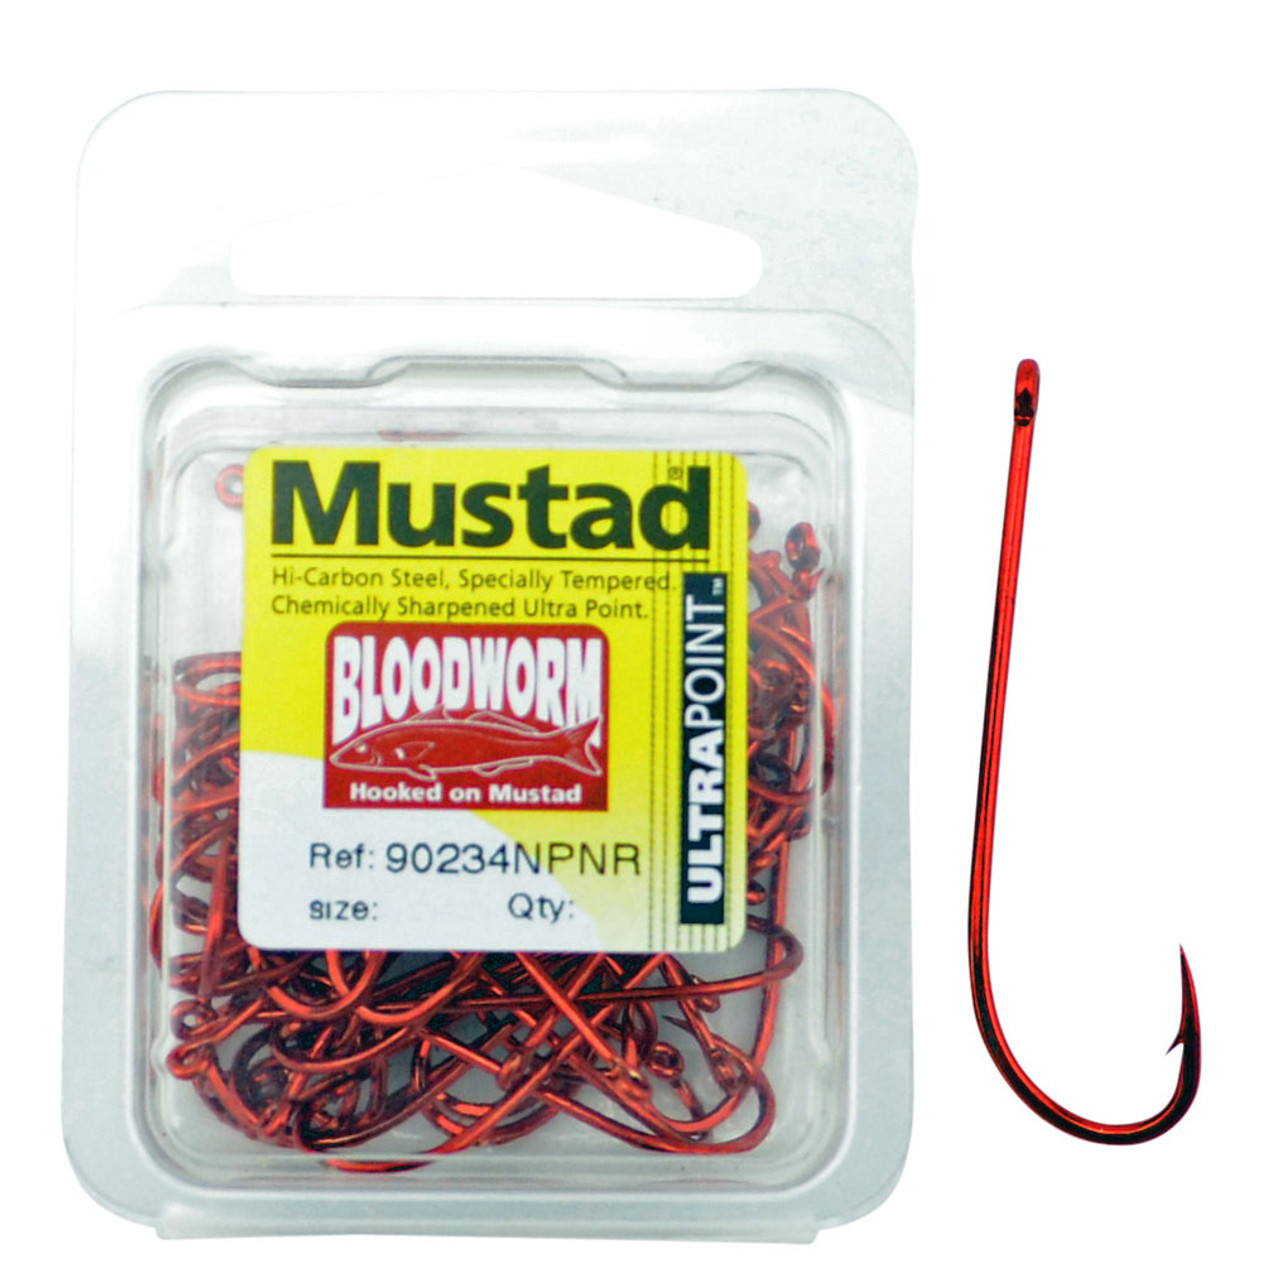 Mustad - Long Shank Beak Hook - Size 2/0, 8 pack - $1.95 - 92673-20 